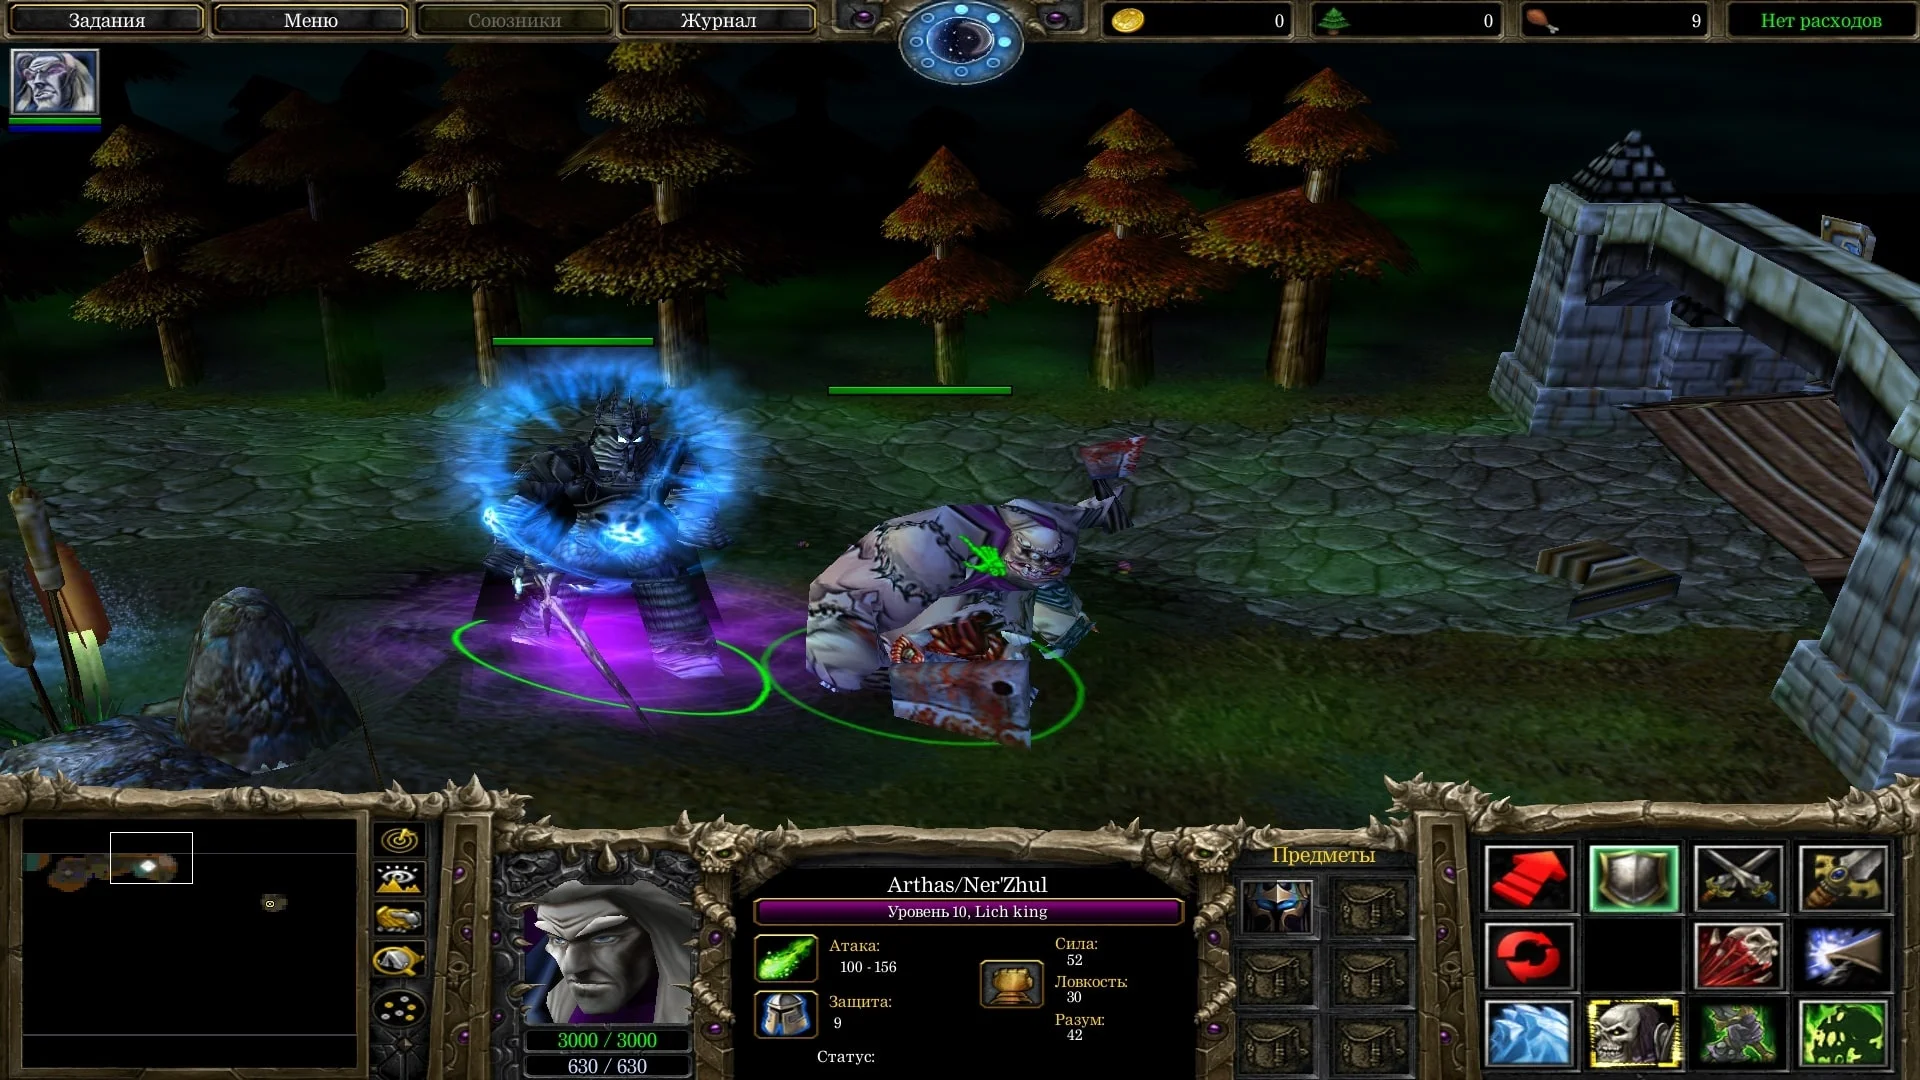 Пользовательские кампании Warcraft III: как фанаты продлевают жизнь 17-летней игре - фото 1